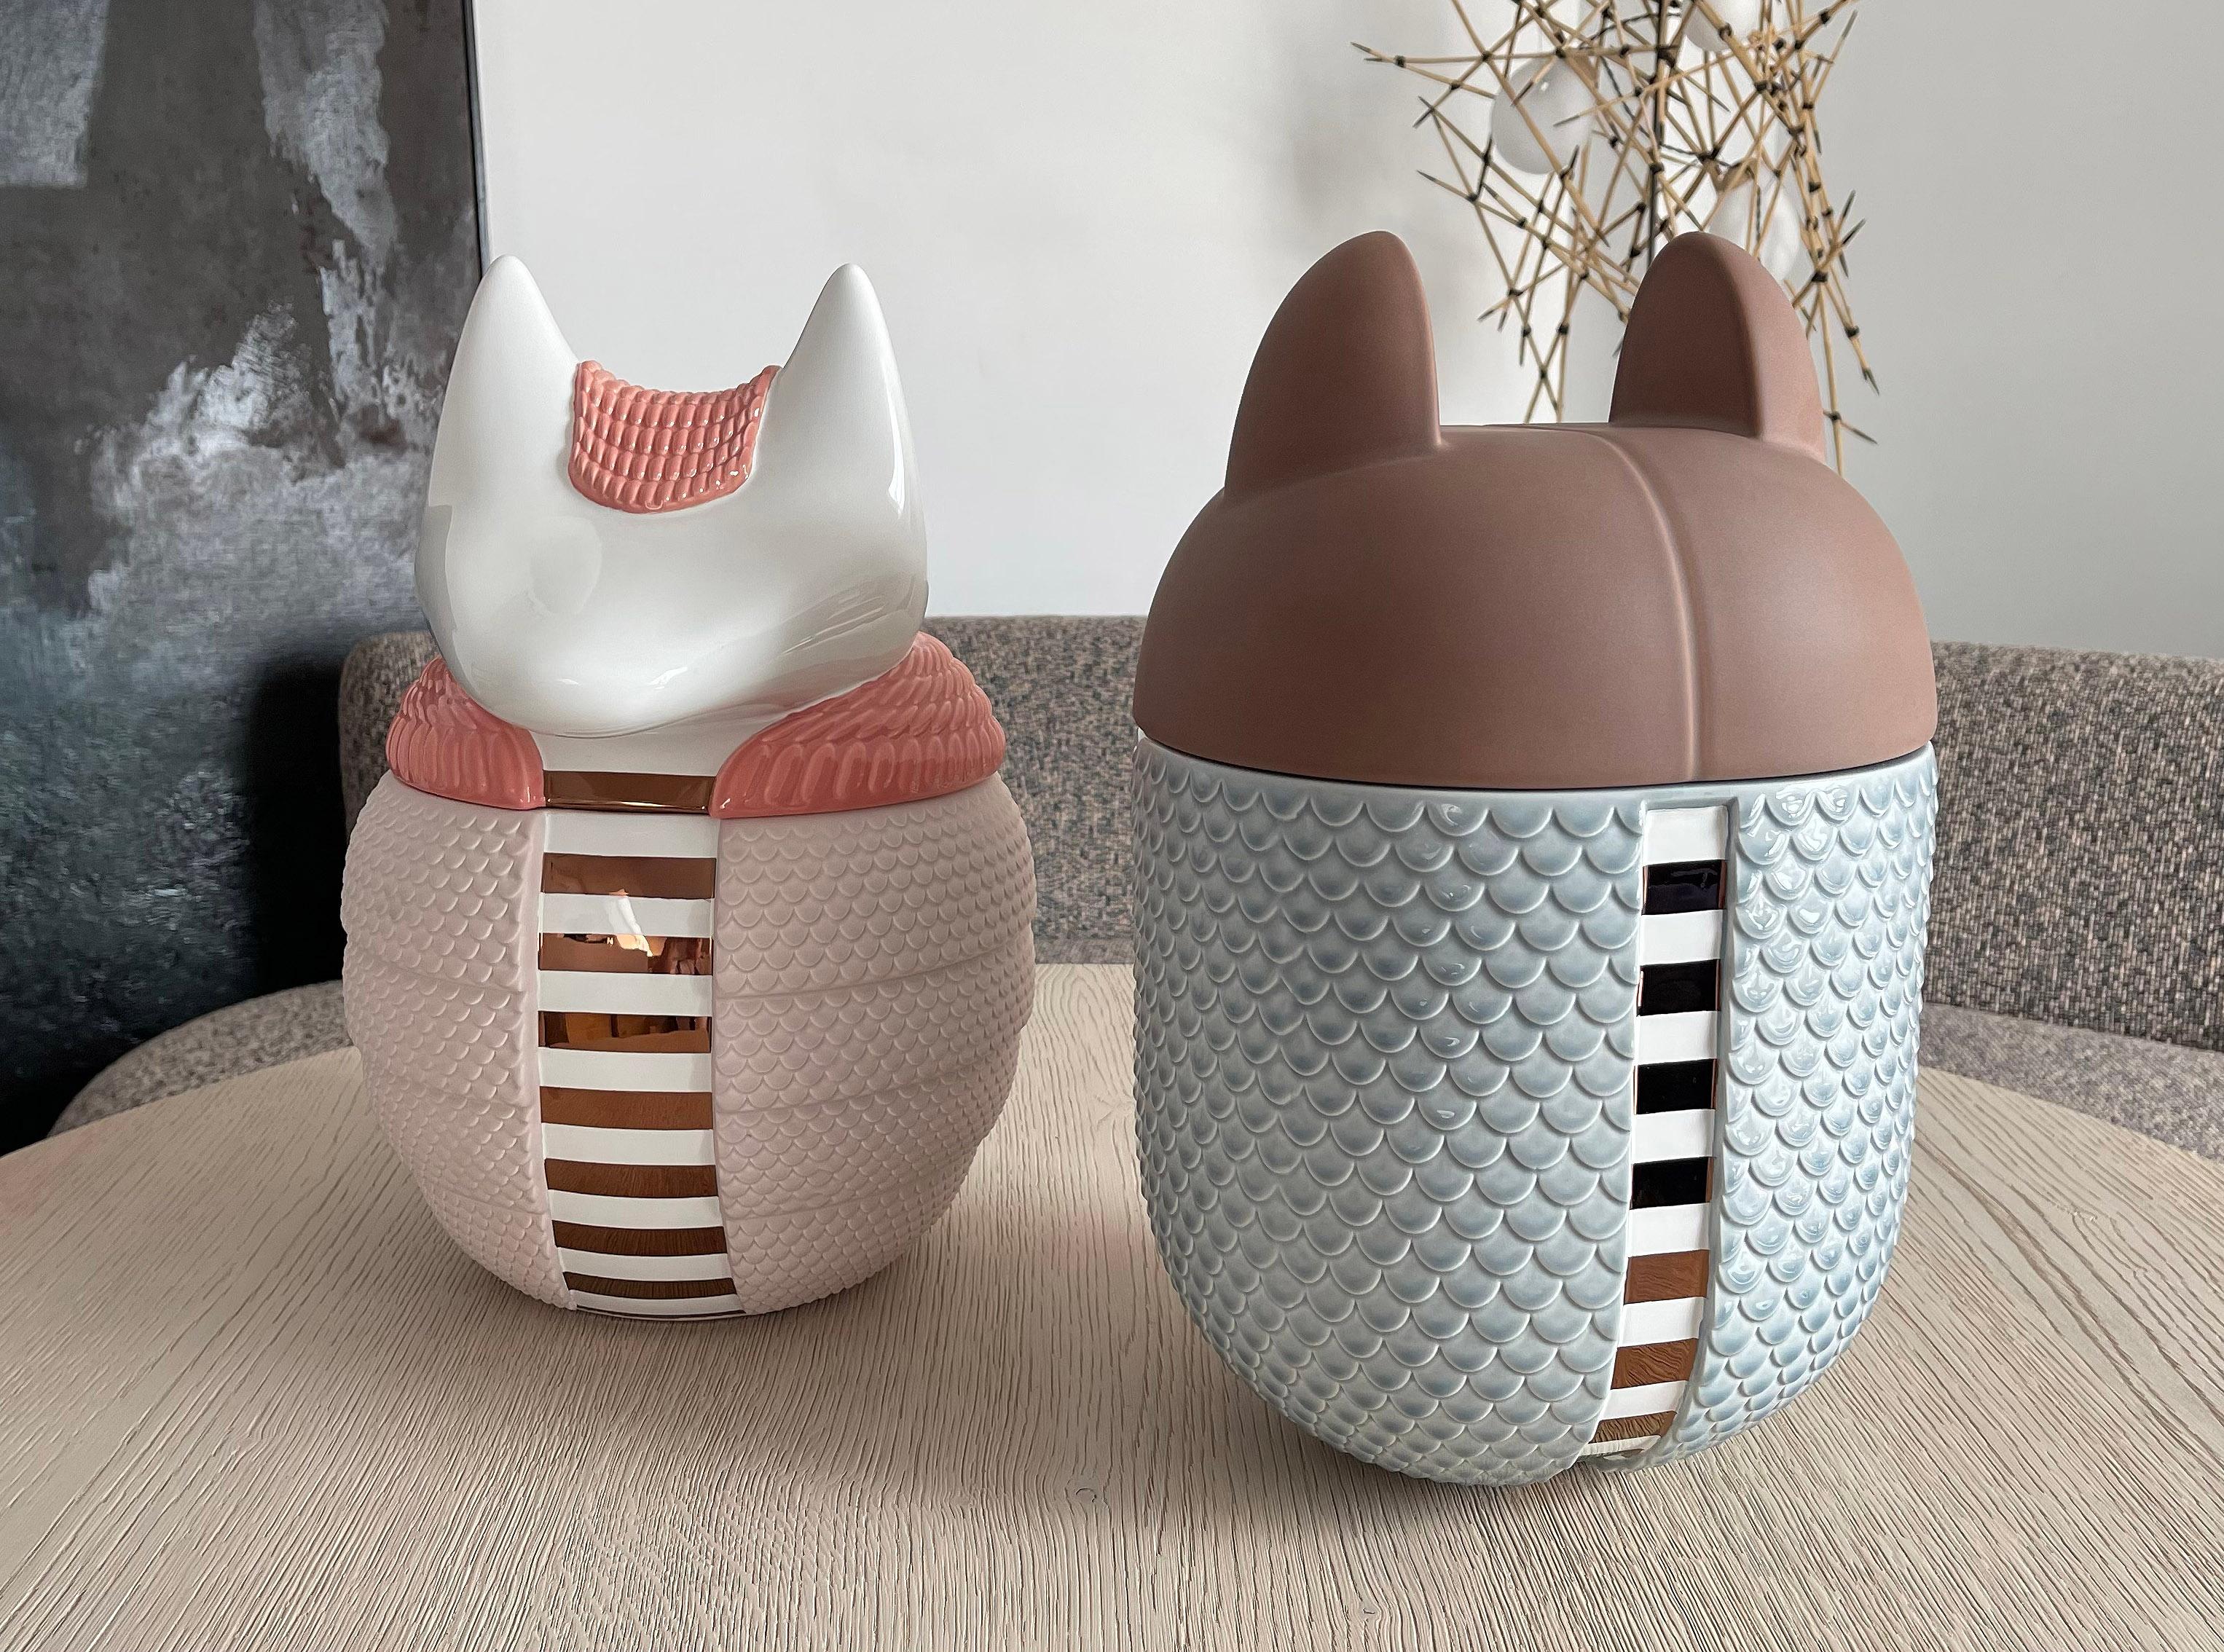 Ensemble de 2 vases / récipients en céramique - Animalità Khepri et Loricato par Elena Salmistraro pour Bosa

Khepri et loricato, conçus par Elena Salmistraro pour Bosa, sont des récipients/vases en forme de tatou en céramique enrichie de métaux